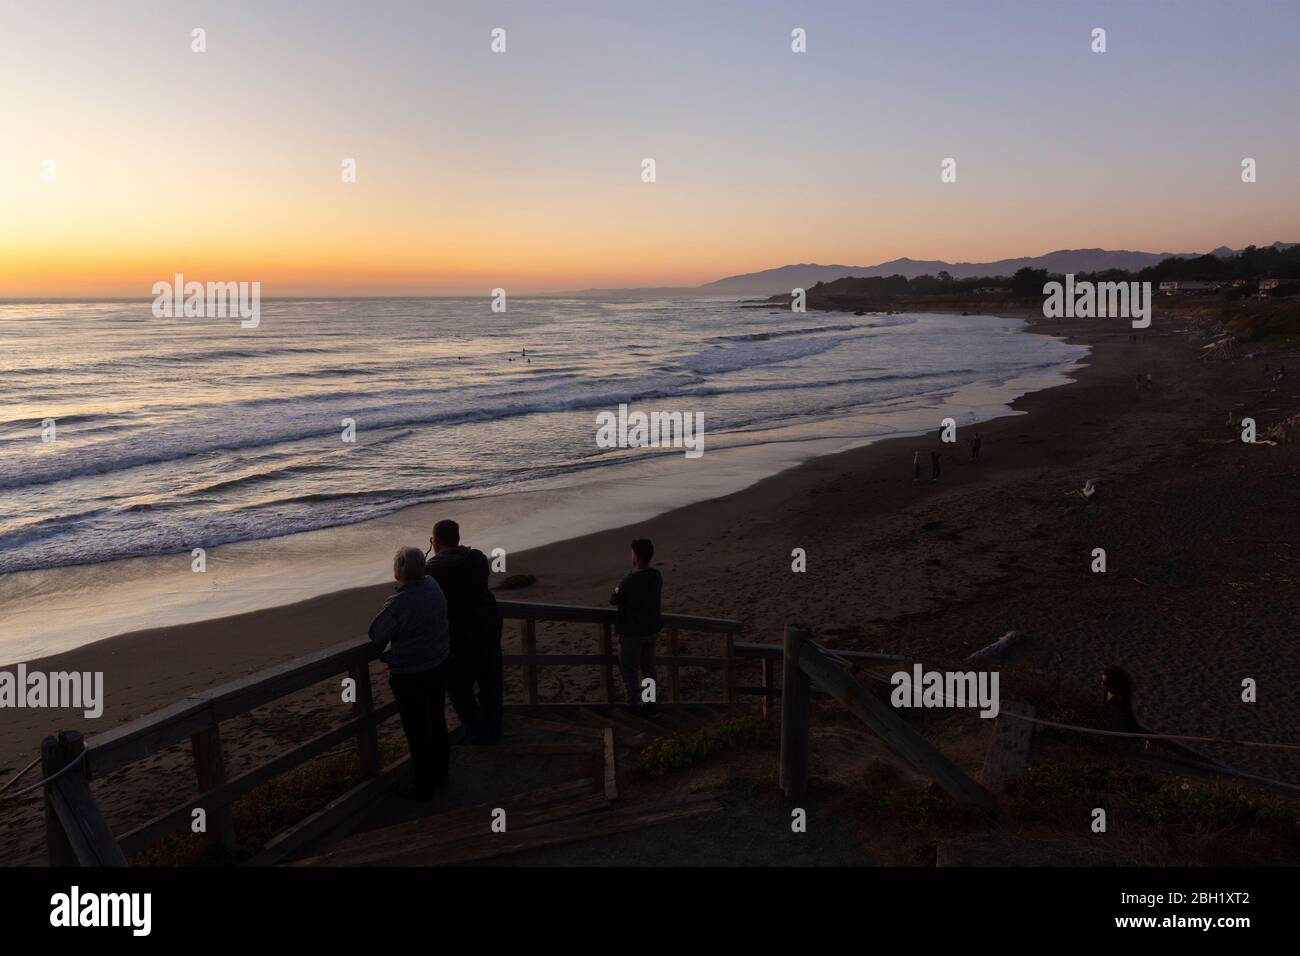 CAMBRIA, STATI UNITI - 21 SETTEMBRE 2019 : tramonto sulla spiaggia di Moonstone sulla costa californiana con la gente che guarda i surfisti serali. Foto Stock